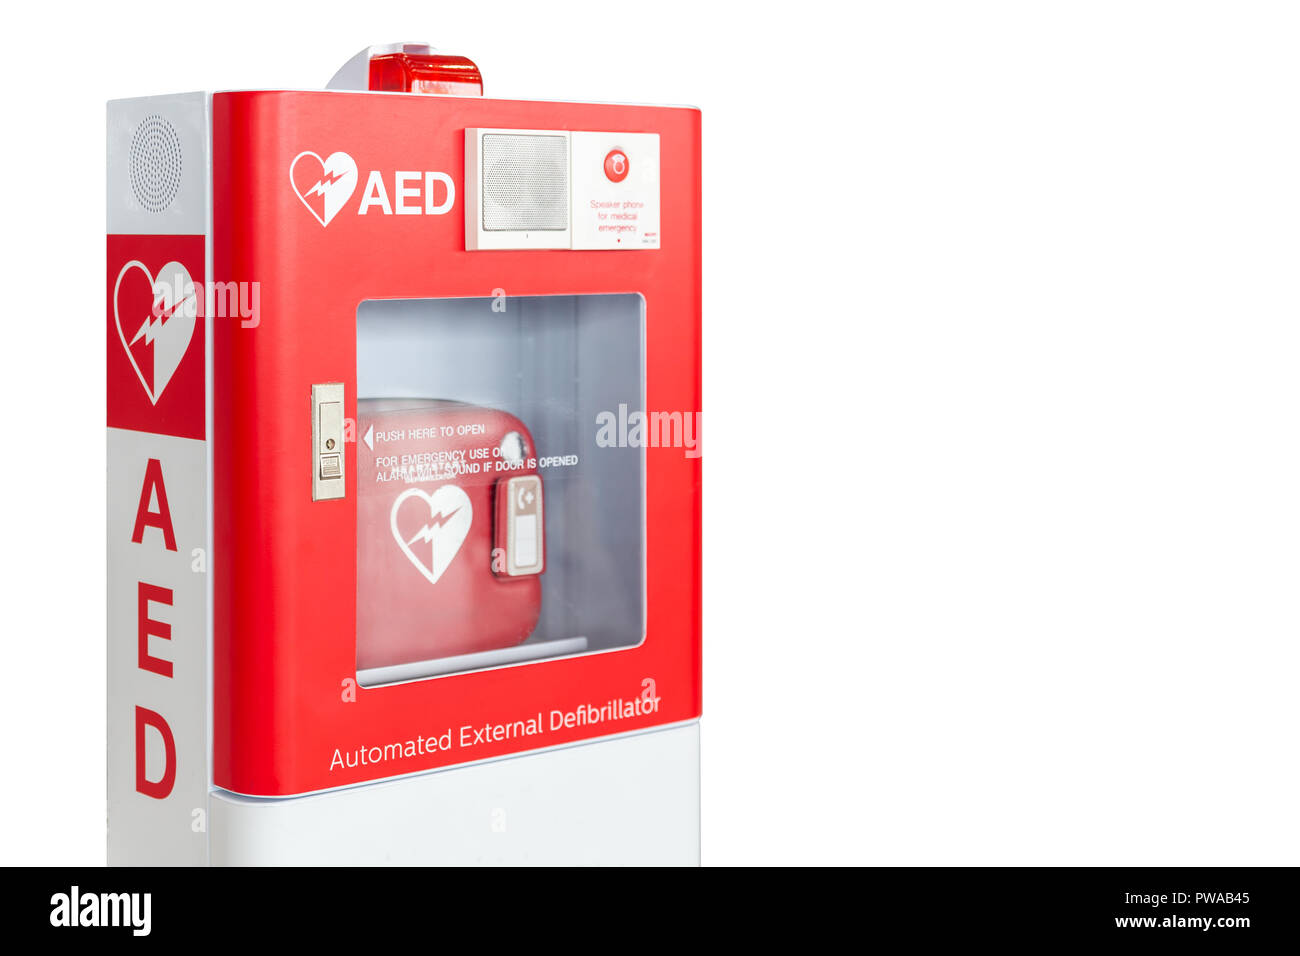 Casella semiautomatica o Defibrillatore automatico esterno al pronto soccorso dispositivo isolato su sfondo bianco Foto Stock